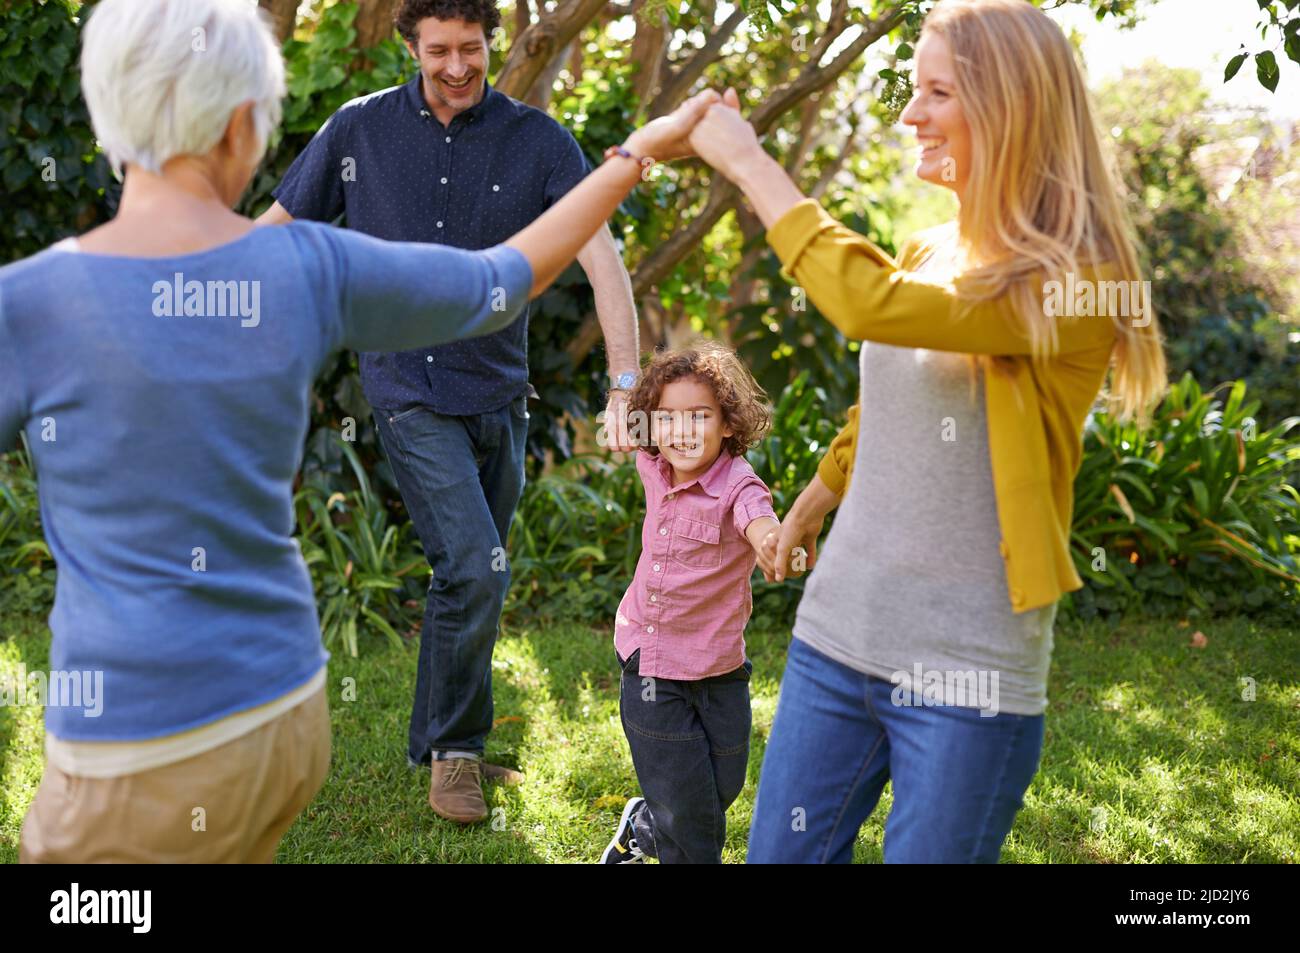 Hai avuto modo di divertirti insieme. Scatto di una famiglia felice multi-generazionale che gioca fuori nel giardino. Foto Stock